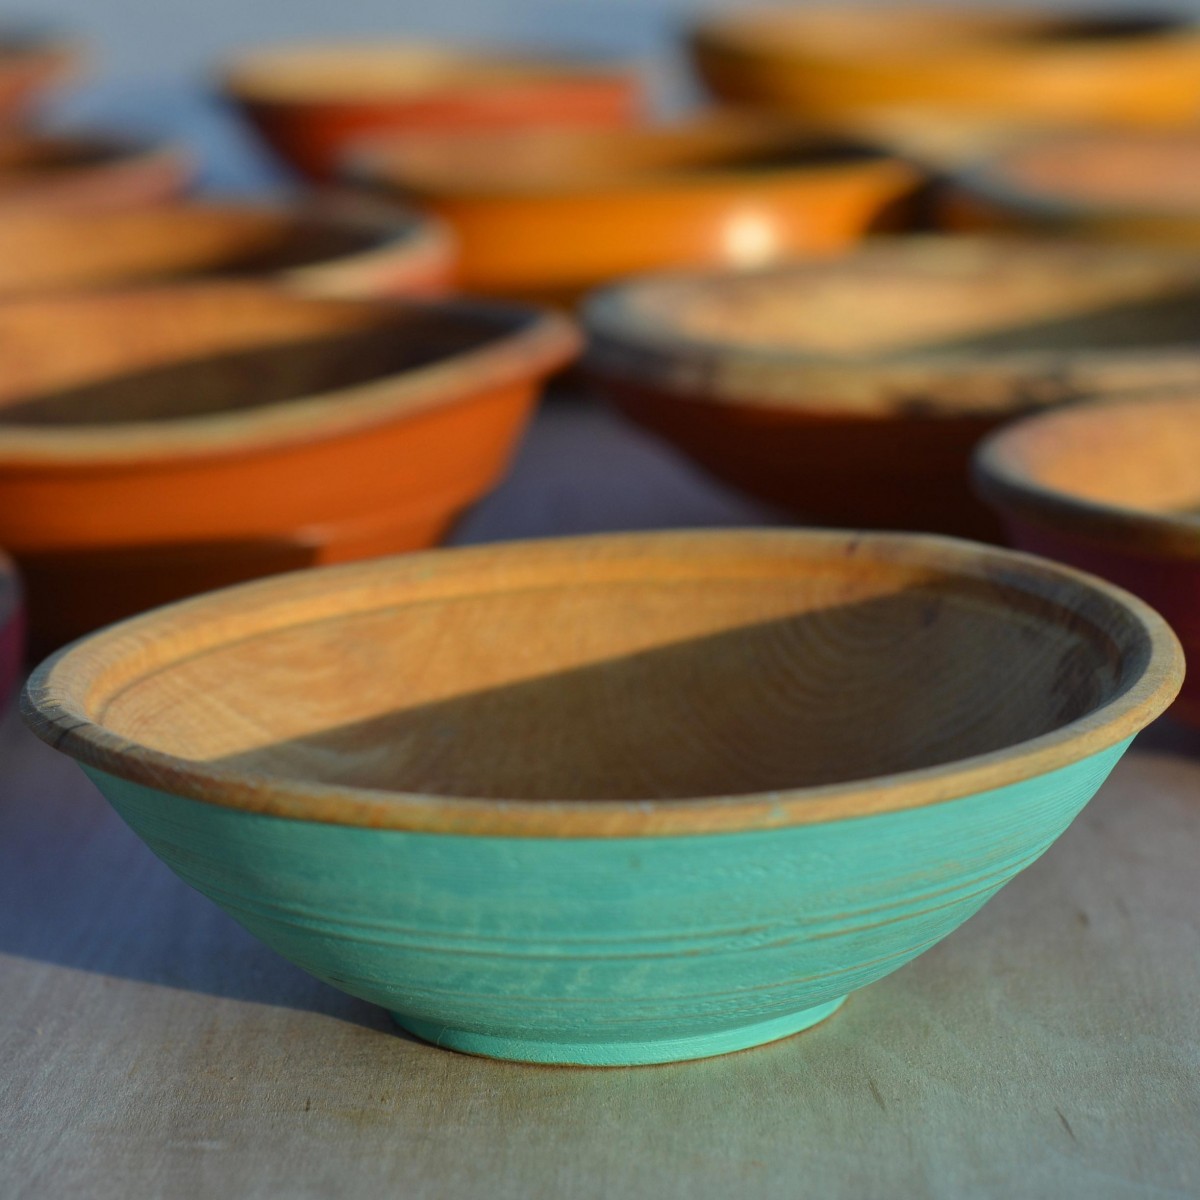 Painted bowls | Pale blue